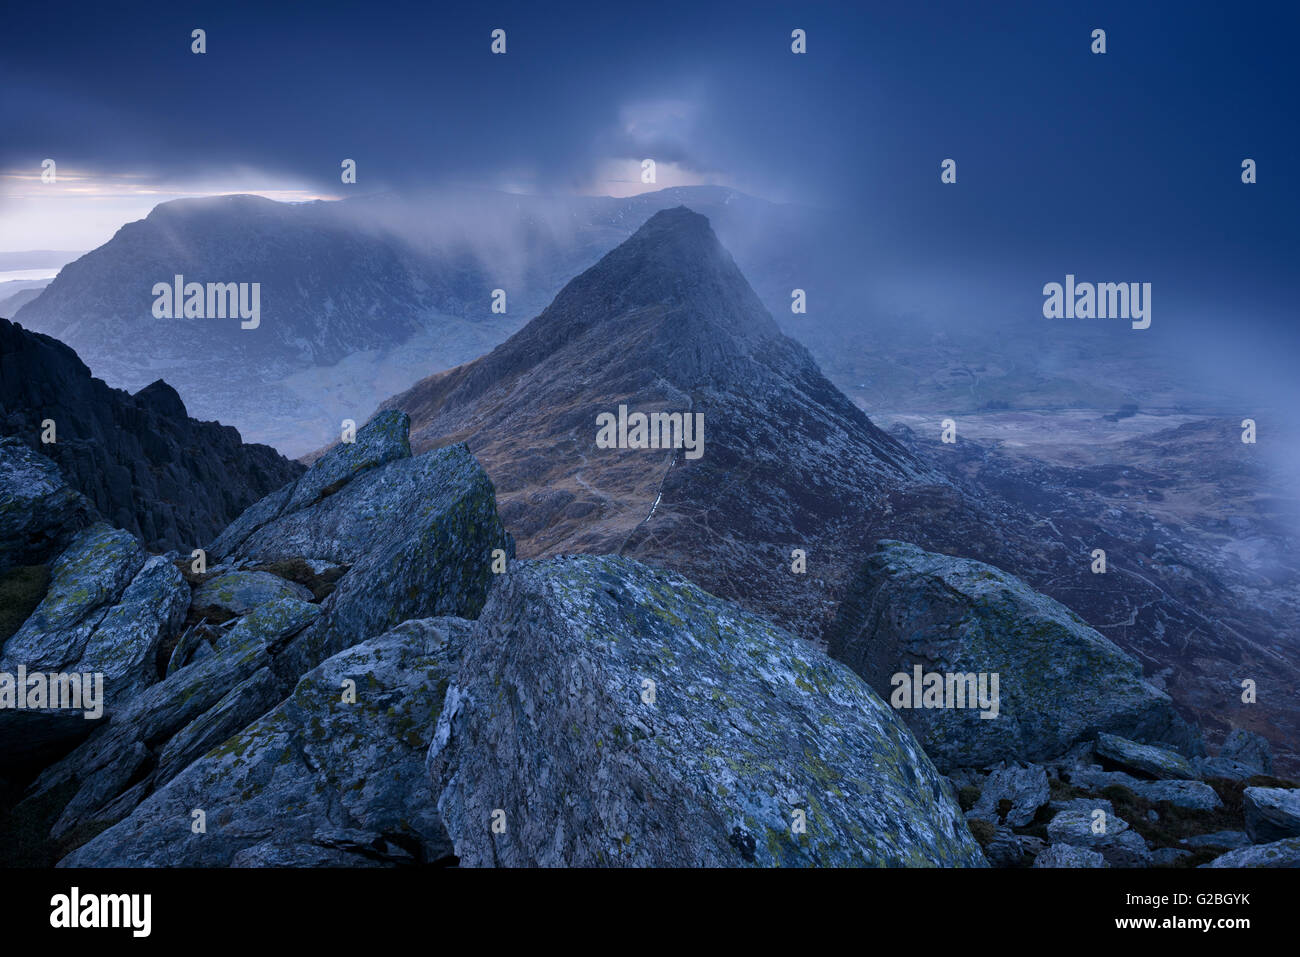 Tryfan entouré par des nuages bas au crépuscule dans les montagnes Glyder, Snowdonia. Banque D'Images